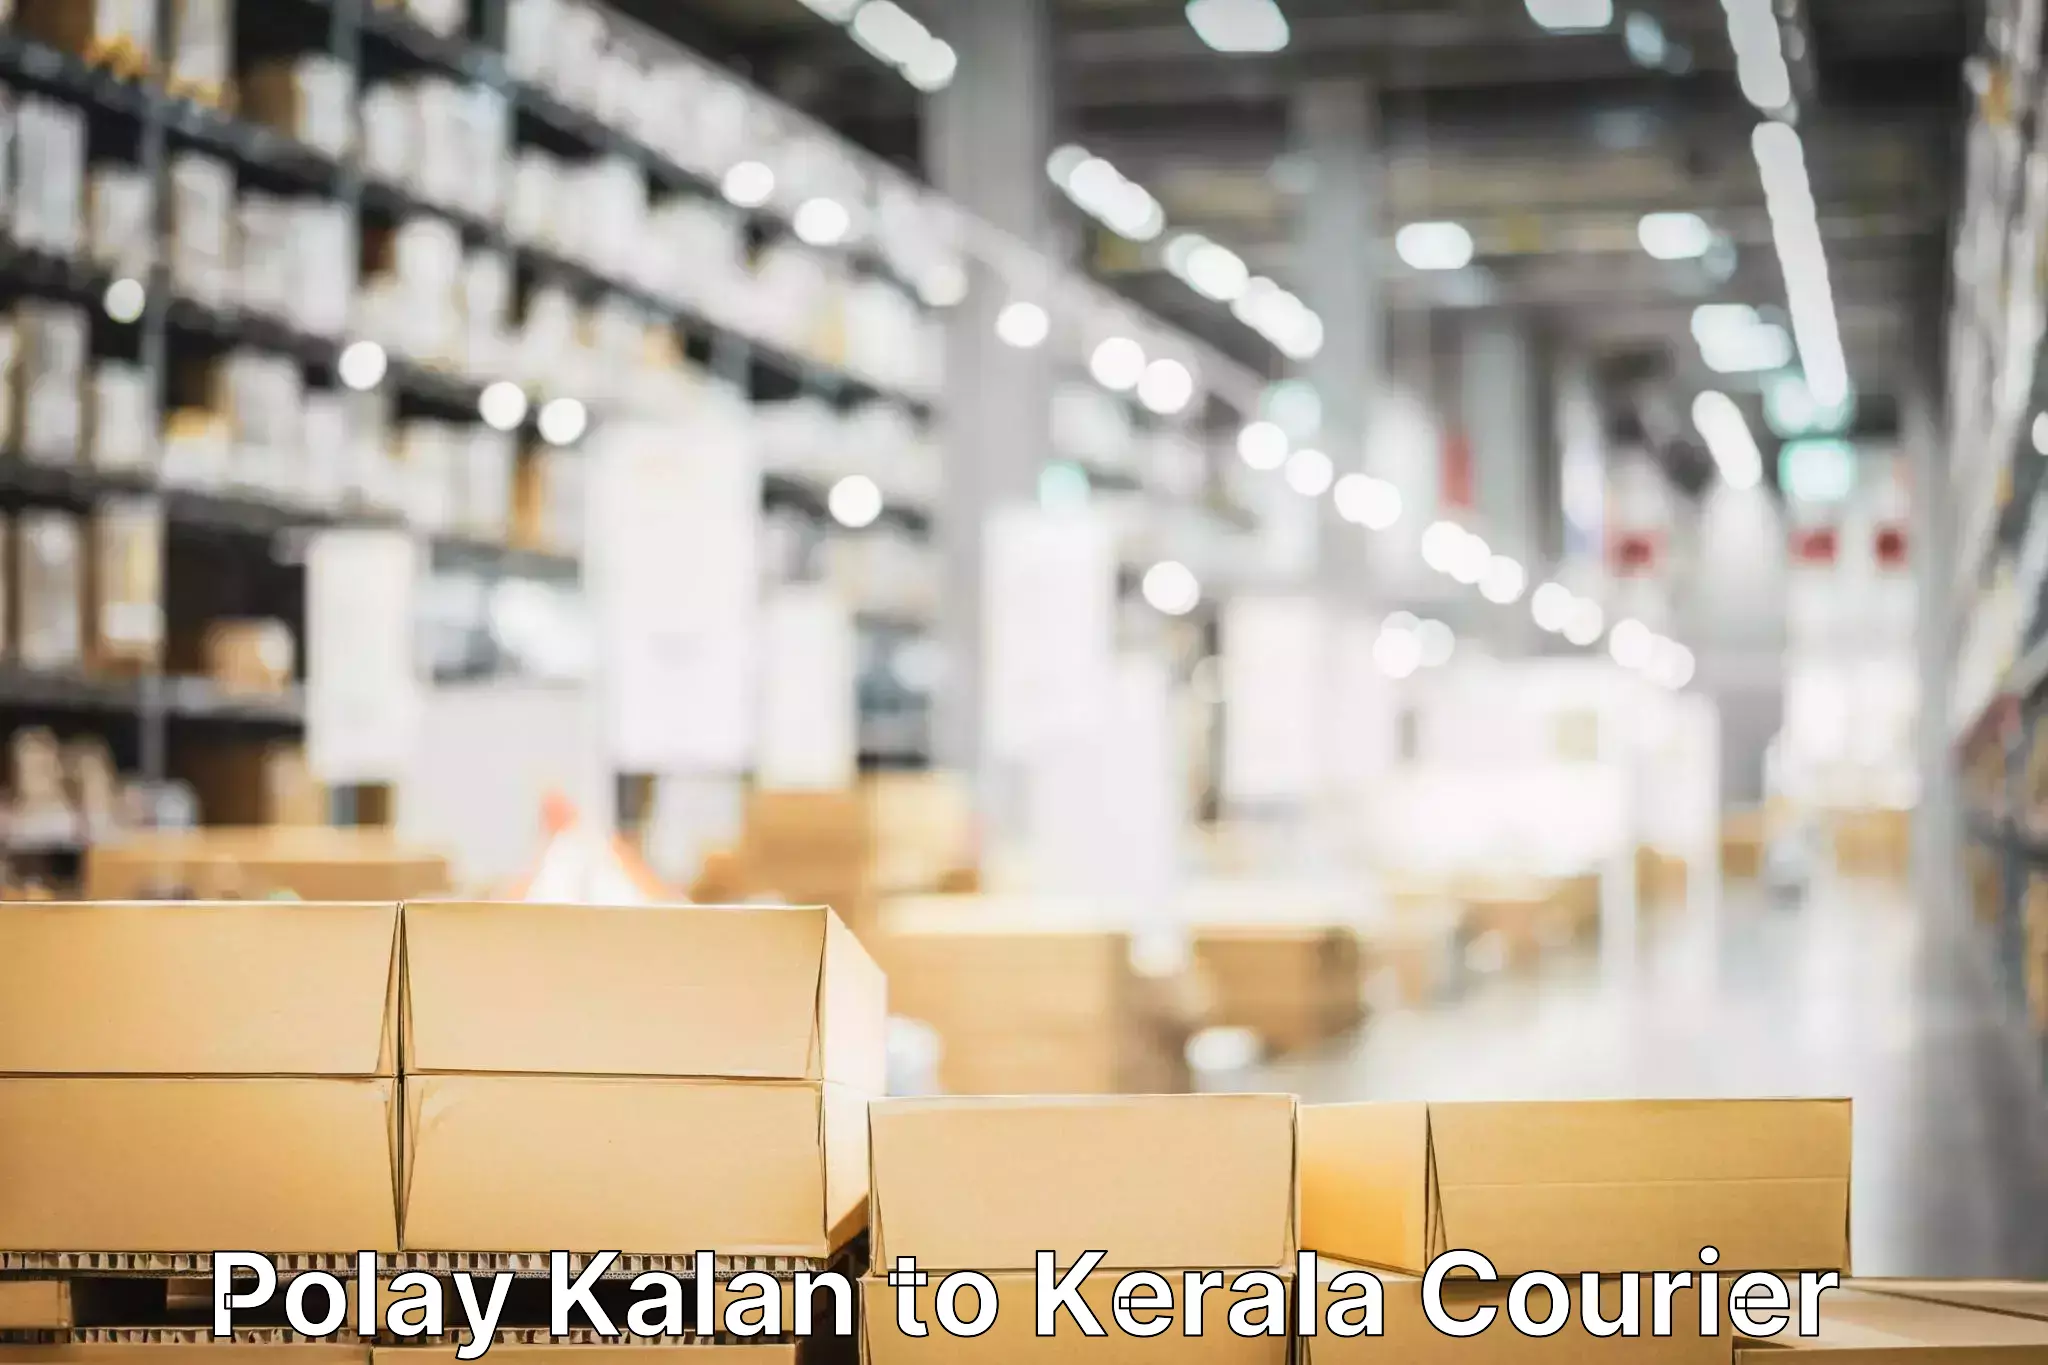 Fast shipping solutions Polay Kalan to Kerala